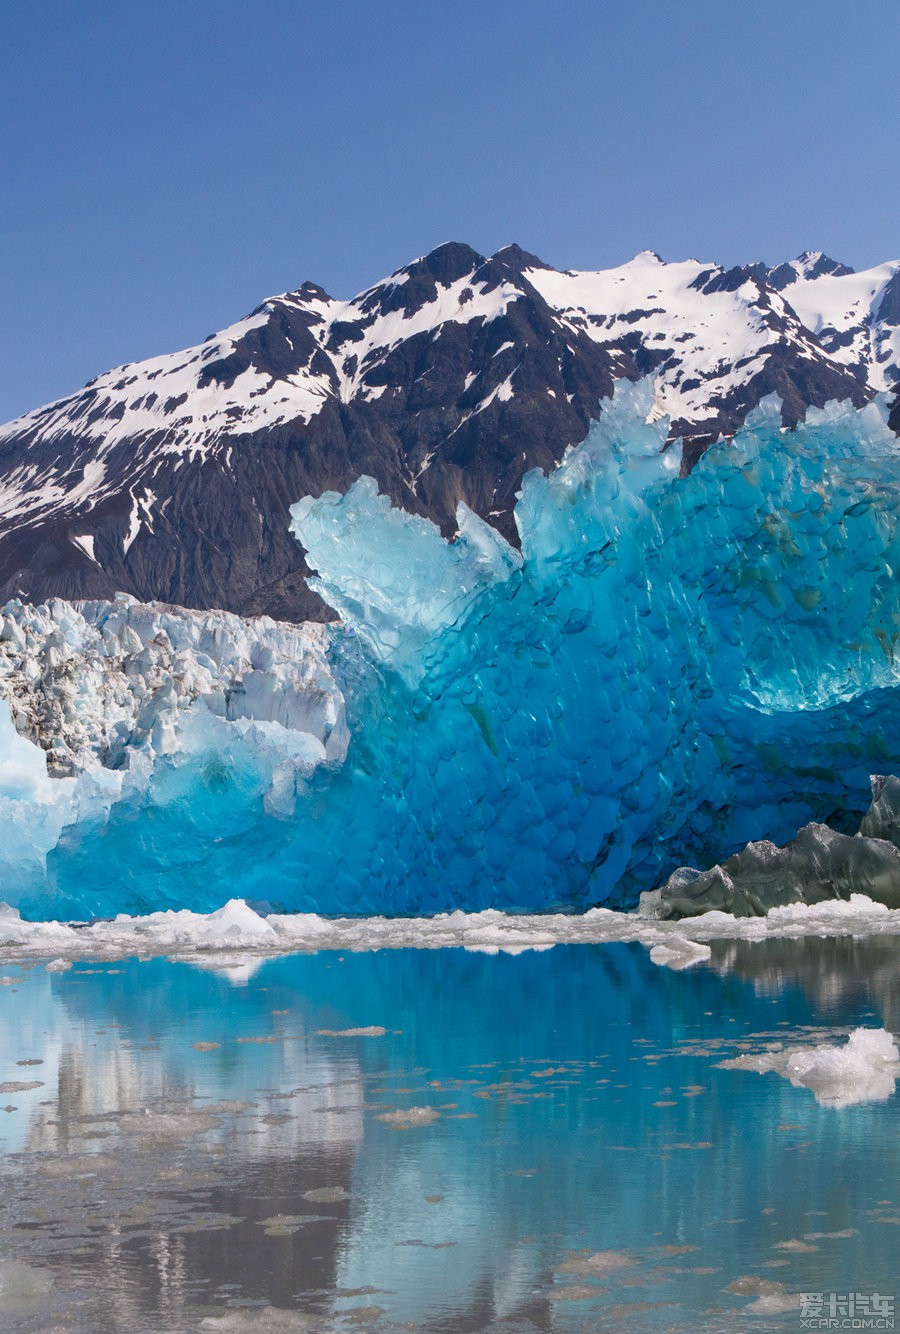 > 世界自然遗产:美国冰川湾国家公园《画廊篇:自然景观》